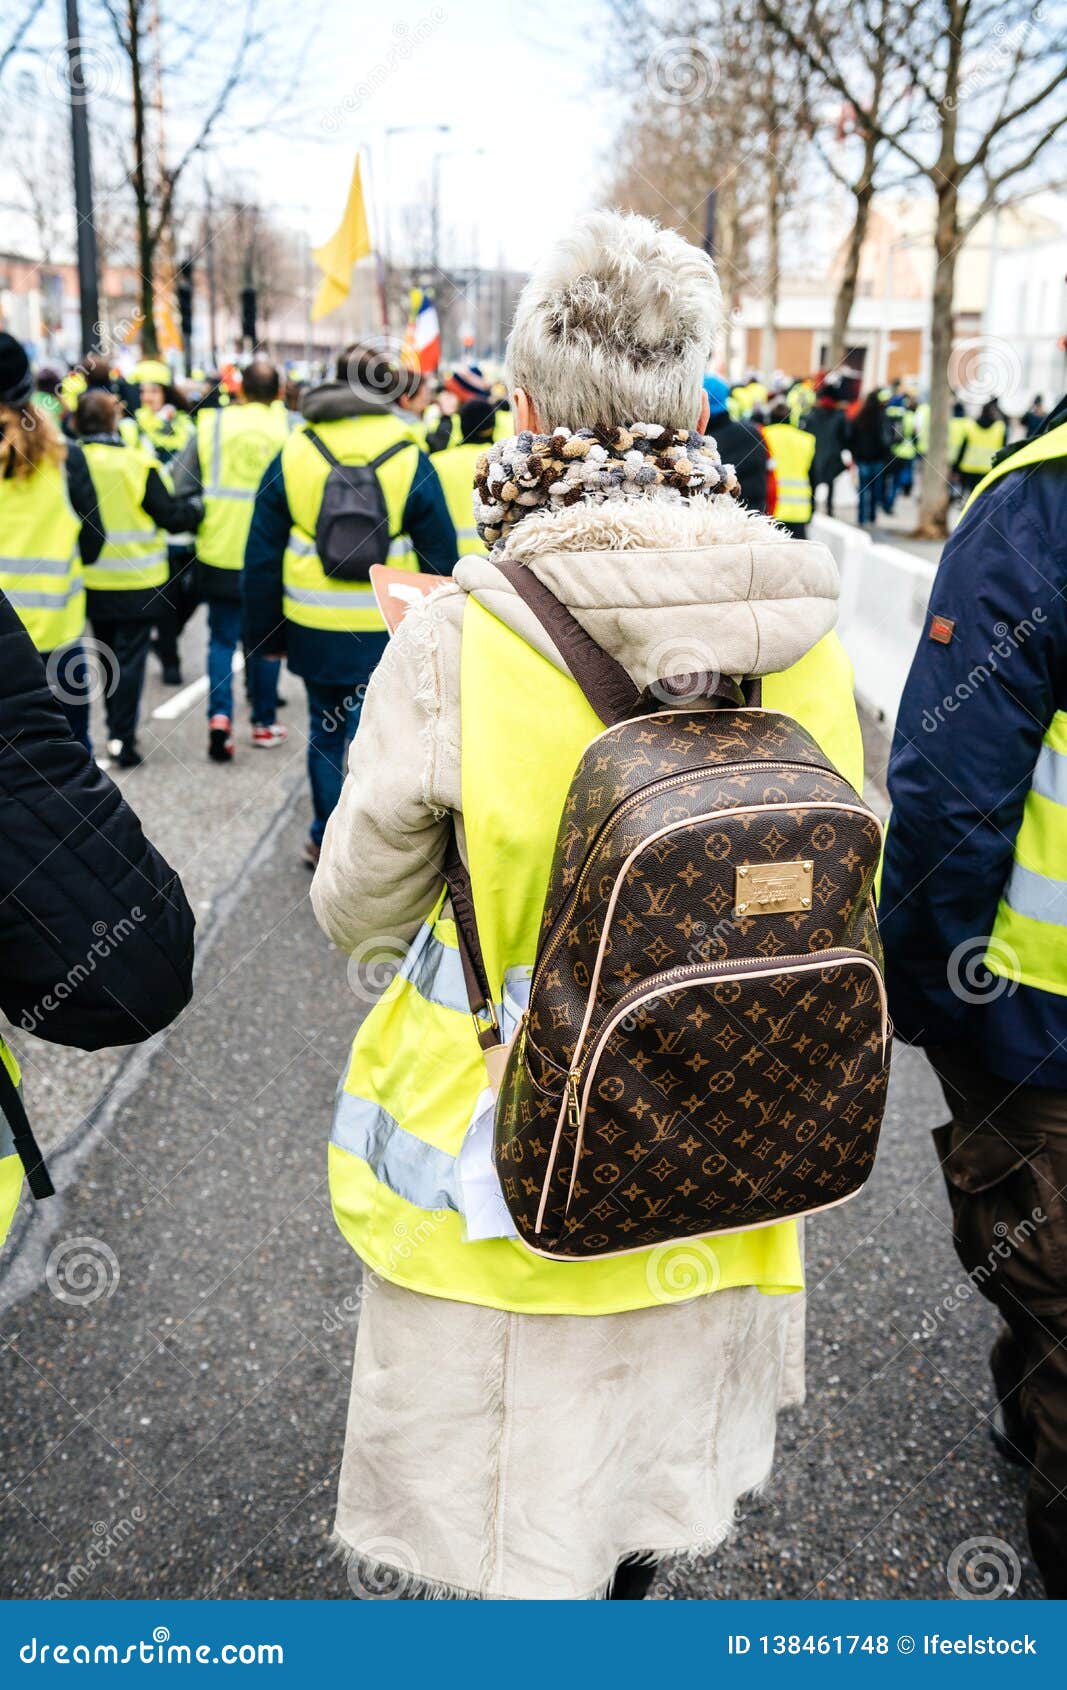 La Femme Avec Le Sac à Dos De Luxe De Louis Vuitton Aux Gilets Jaunes  Protestent Photo stock éditorial - Image du gilet, violence: 138461748